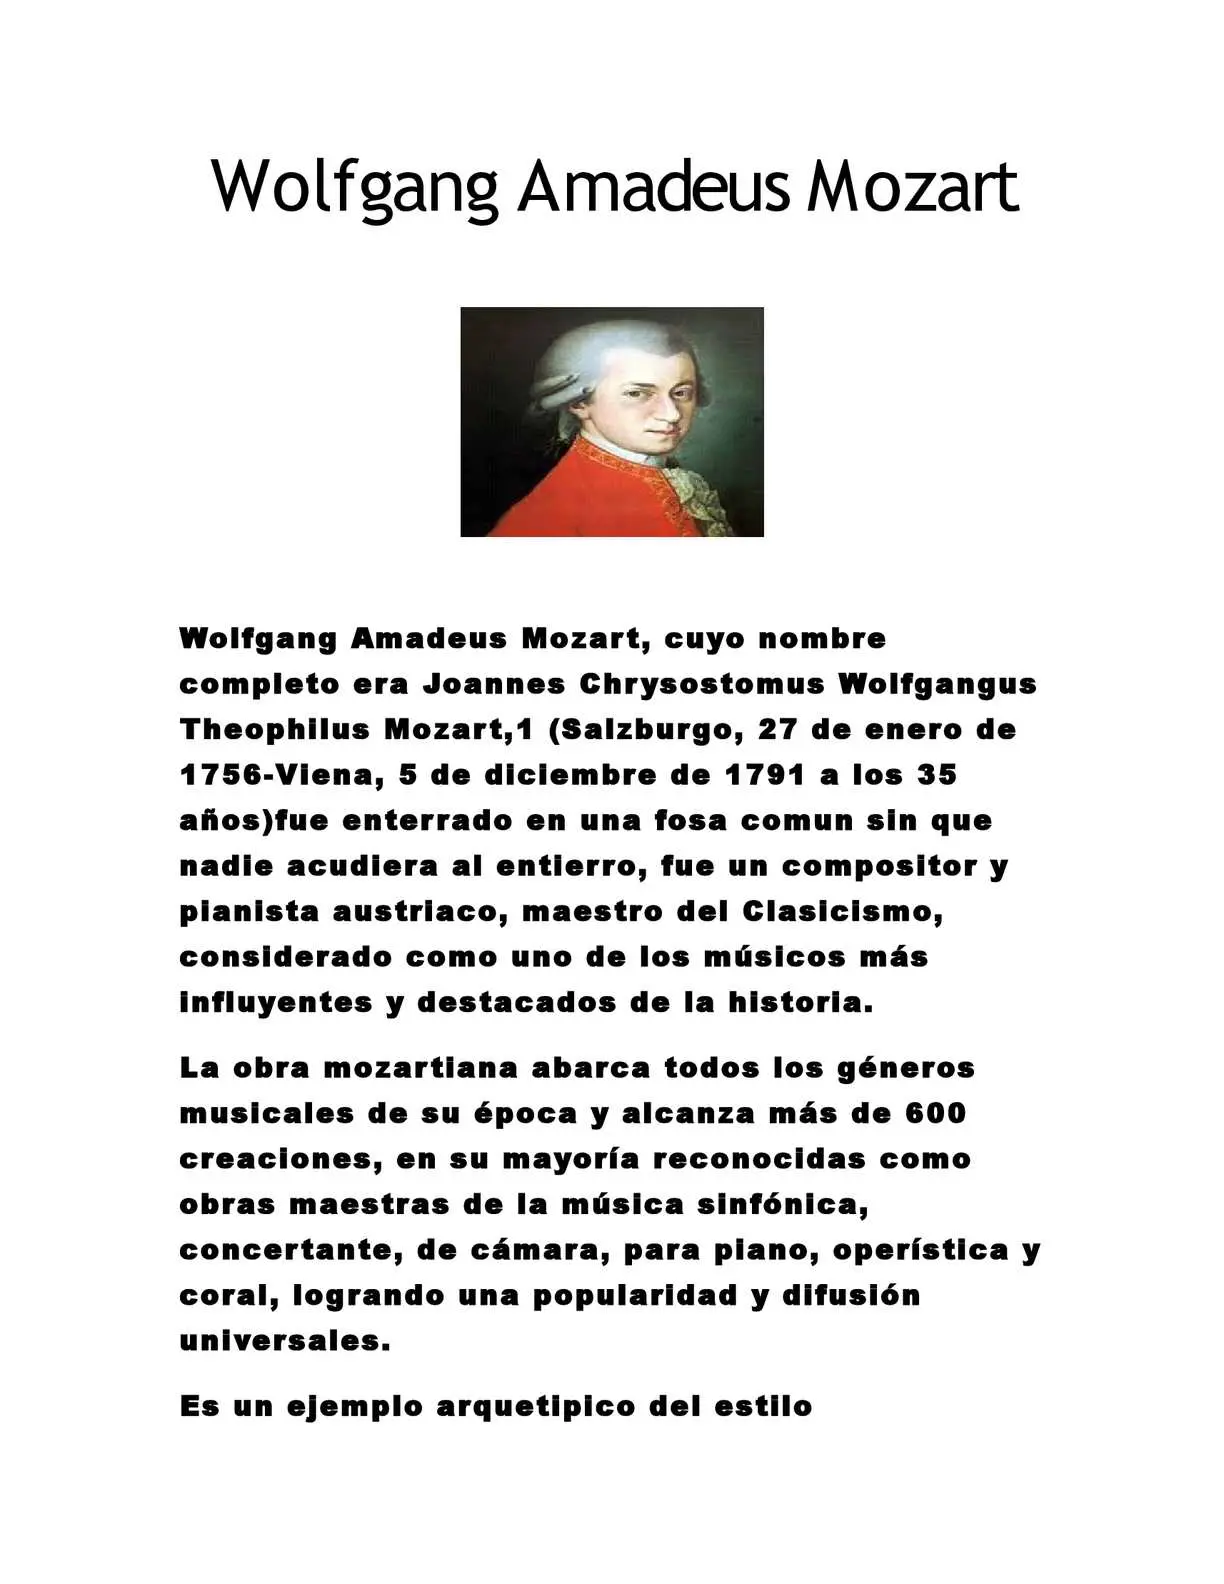 biografia del violinista mosat - Dónde estudió WA Mozart